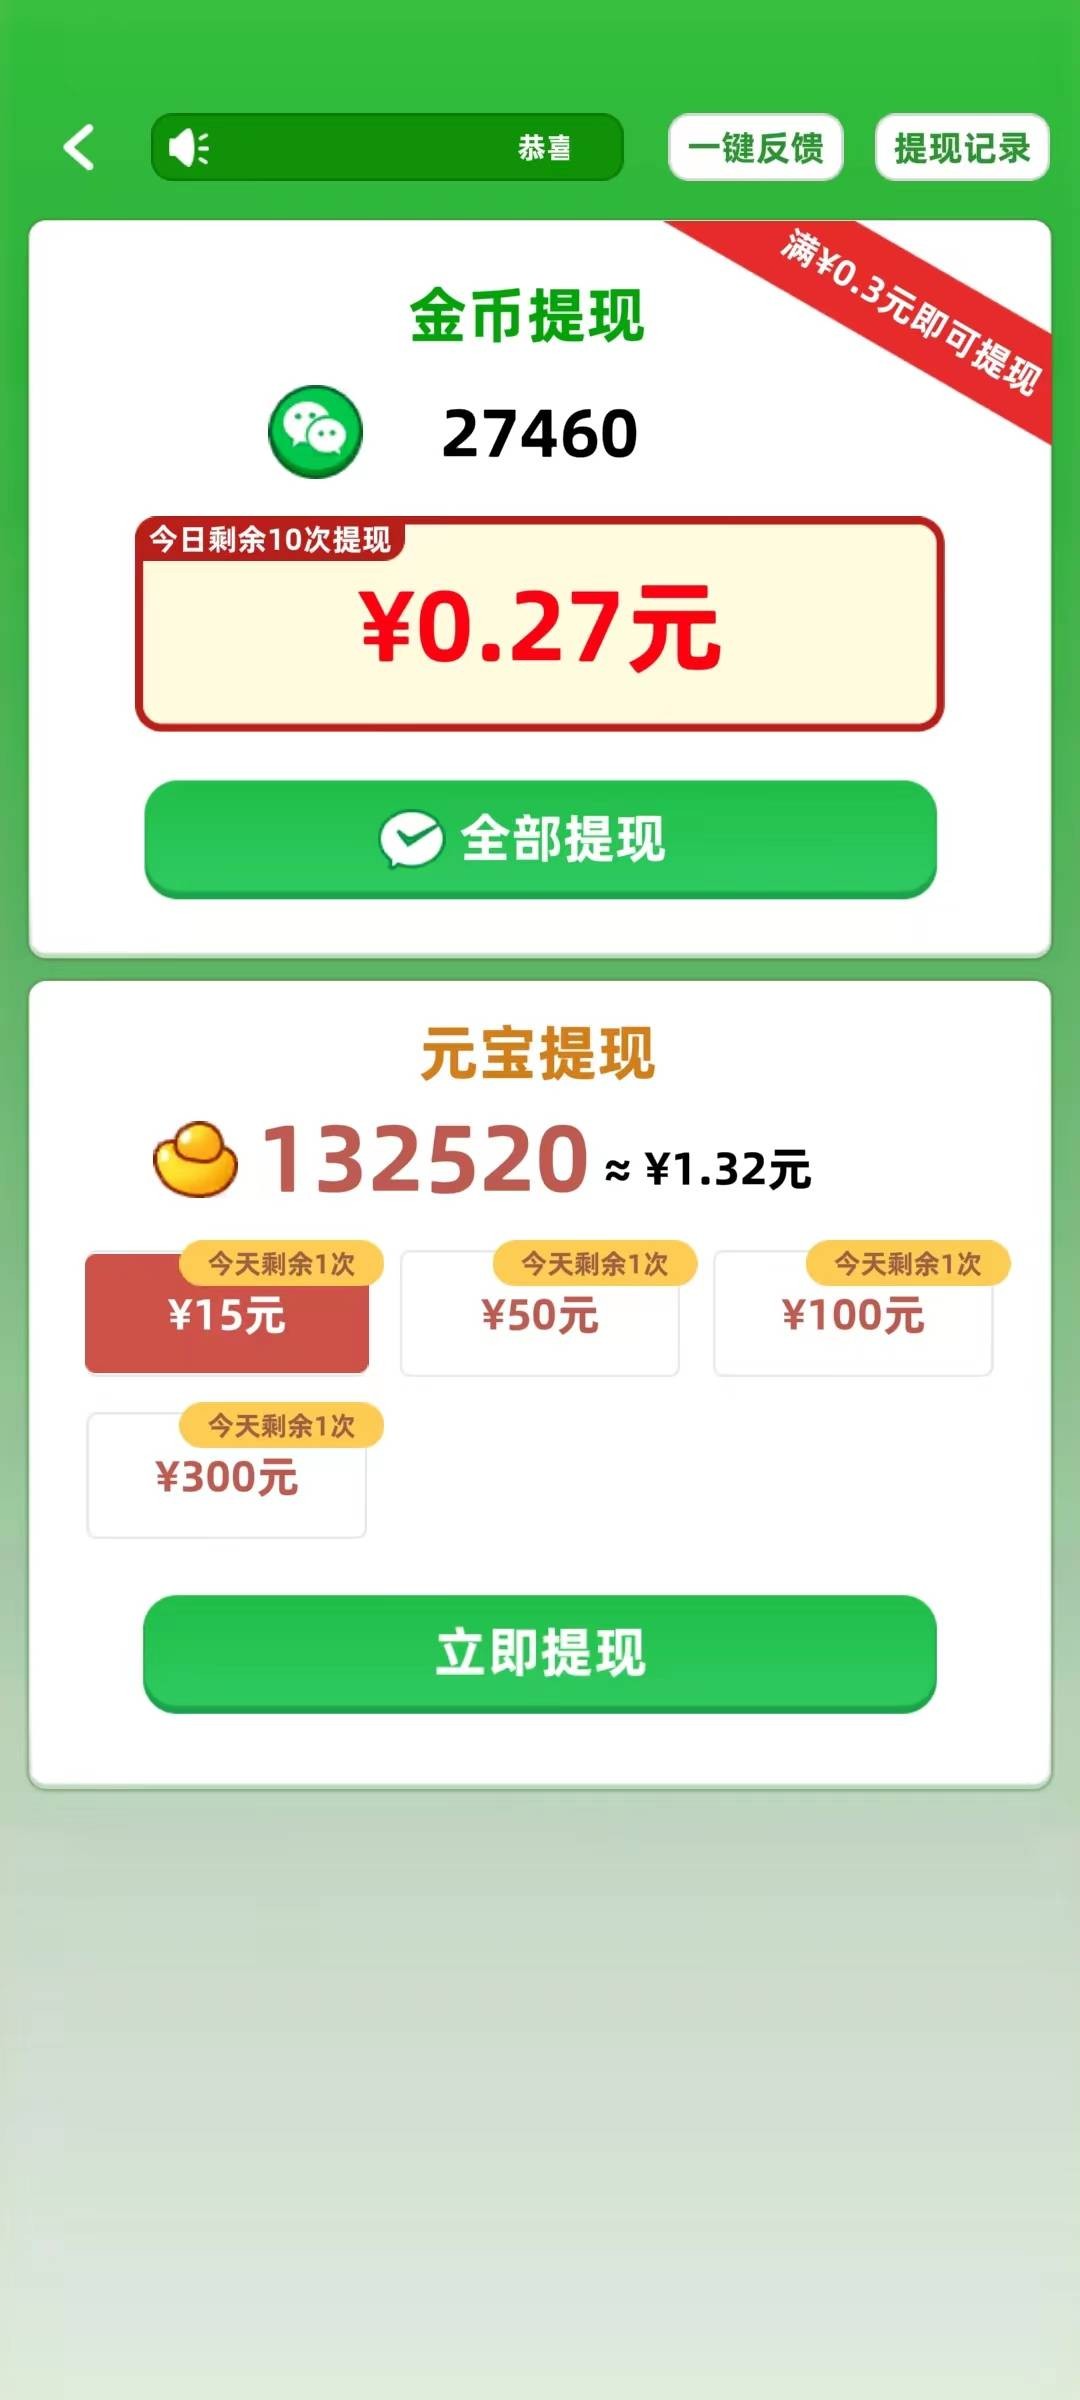 填字解谜王2游戏手游app下载